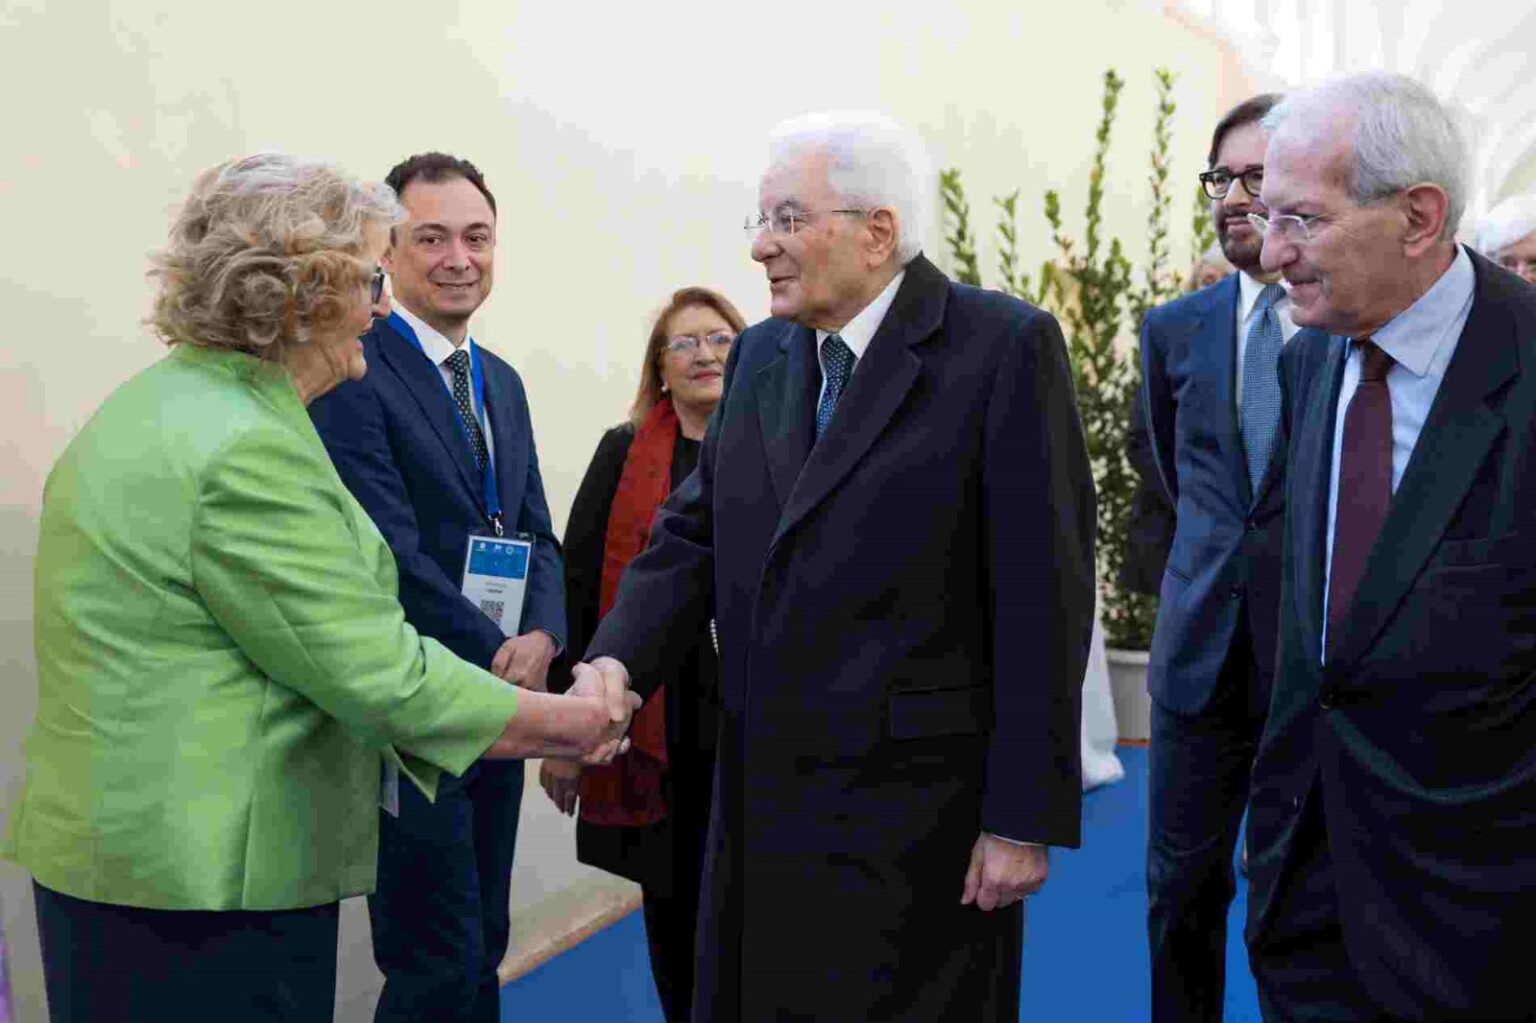 Luigia Melillo e Pierpaolo Limone stringono la mano al presidente Mattarella all'evento Alta formazione e coesione sociale per la gestione delle dinamiche demografiche internazionali